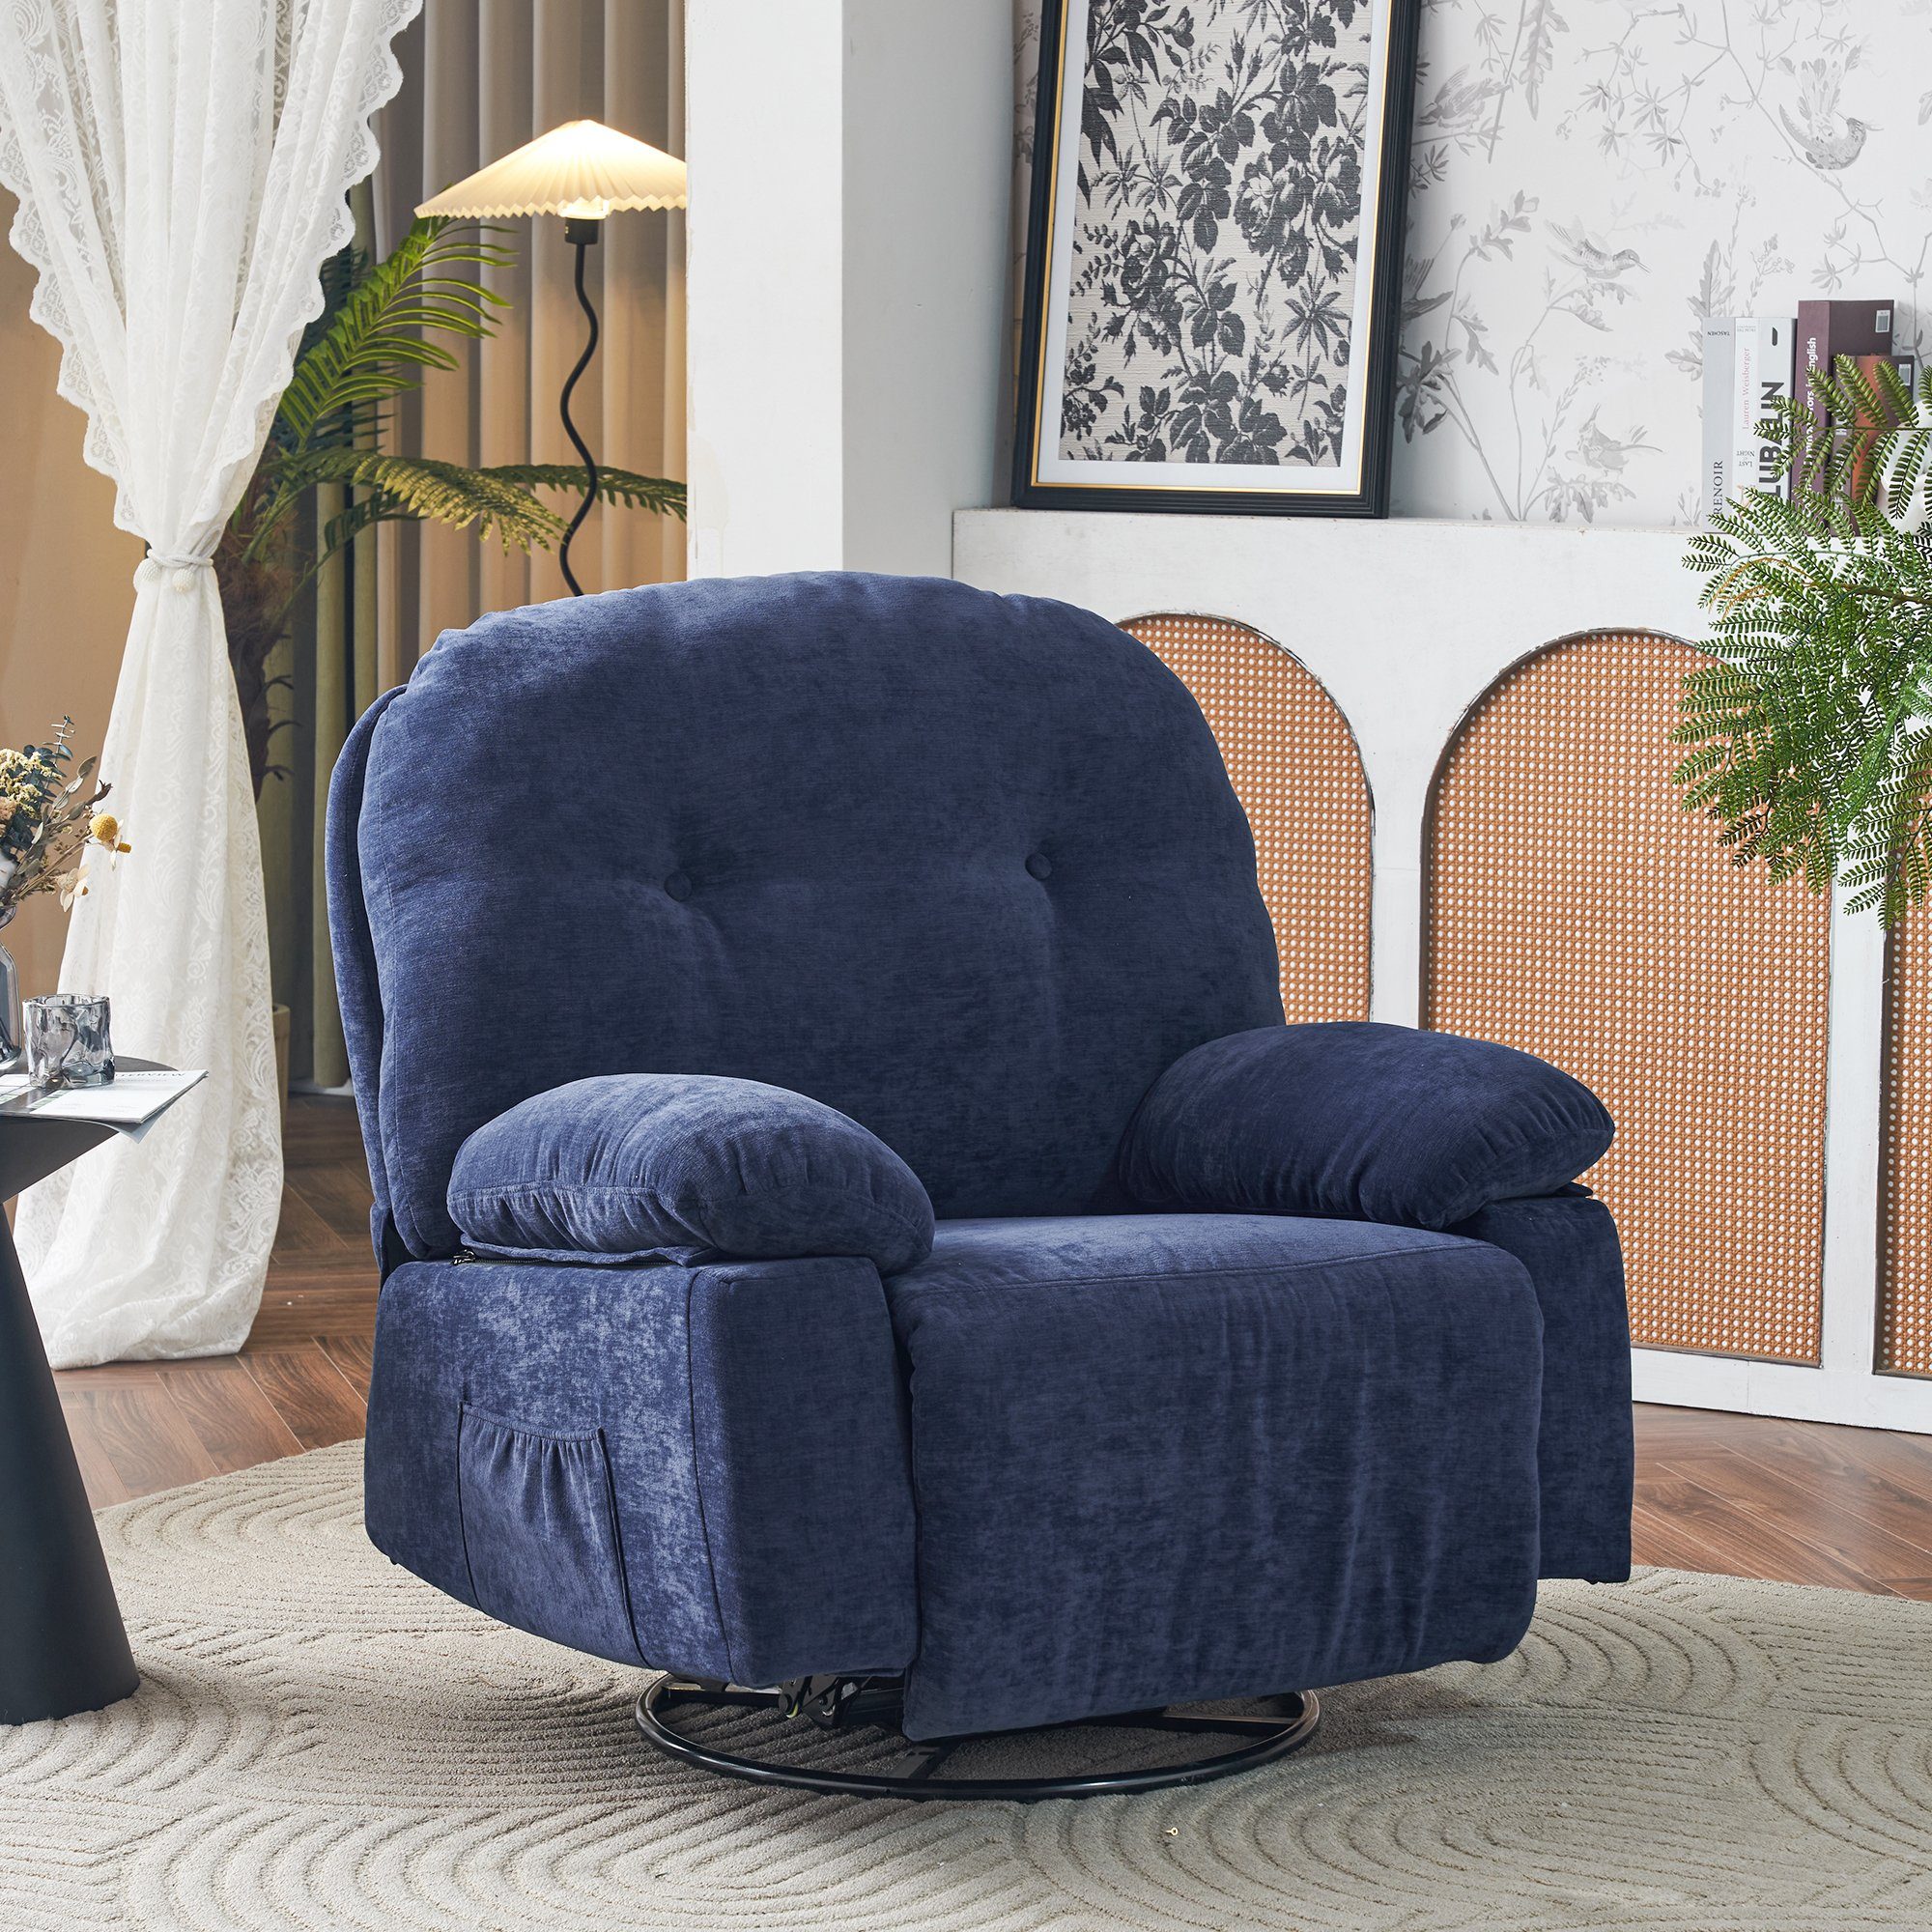 elektrisch Wärmefunktion, mit TV-Sessel 360° Relaxsessel Merax Blau mit Vibration Timer, mit Drehfunktion Fernbedienung, und und Fernsehsessel Massagessel